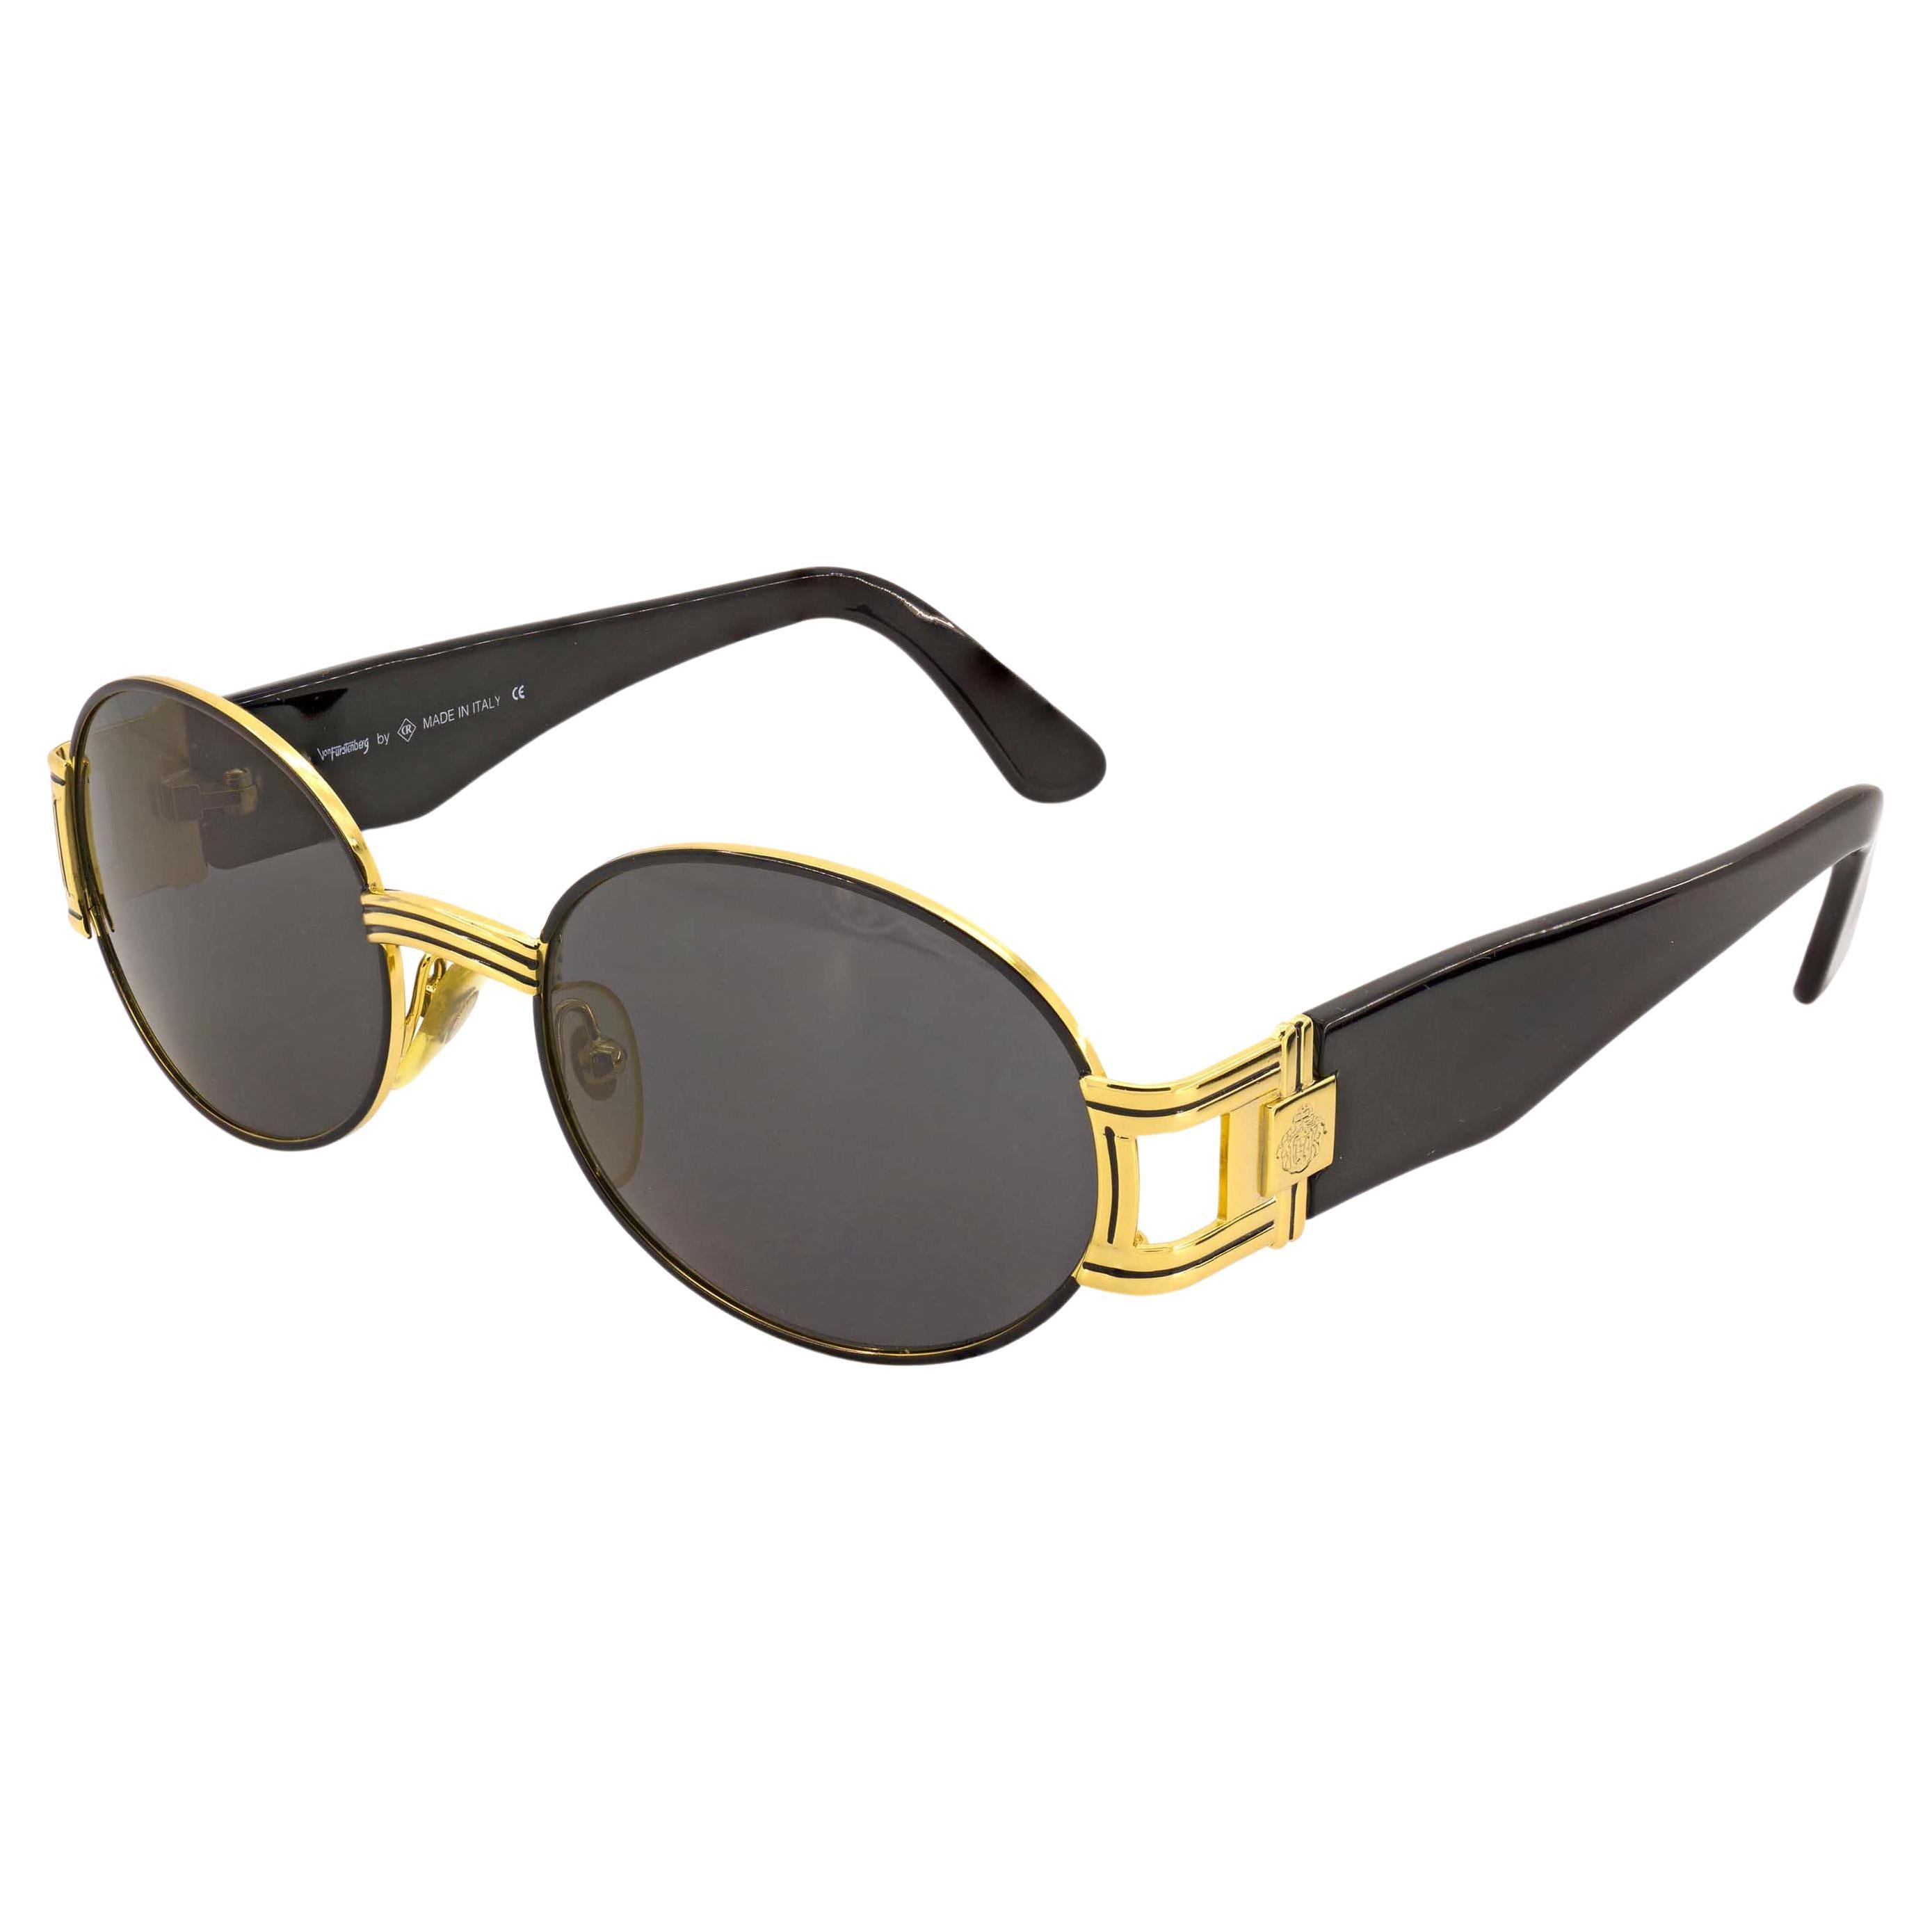 Prince Egon Von Furstenberg vintage sunglasses For Sale